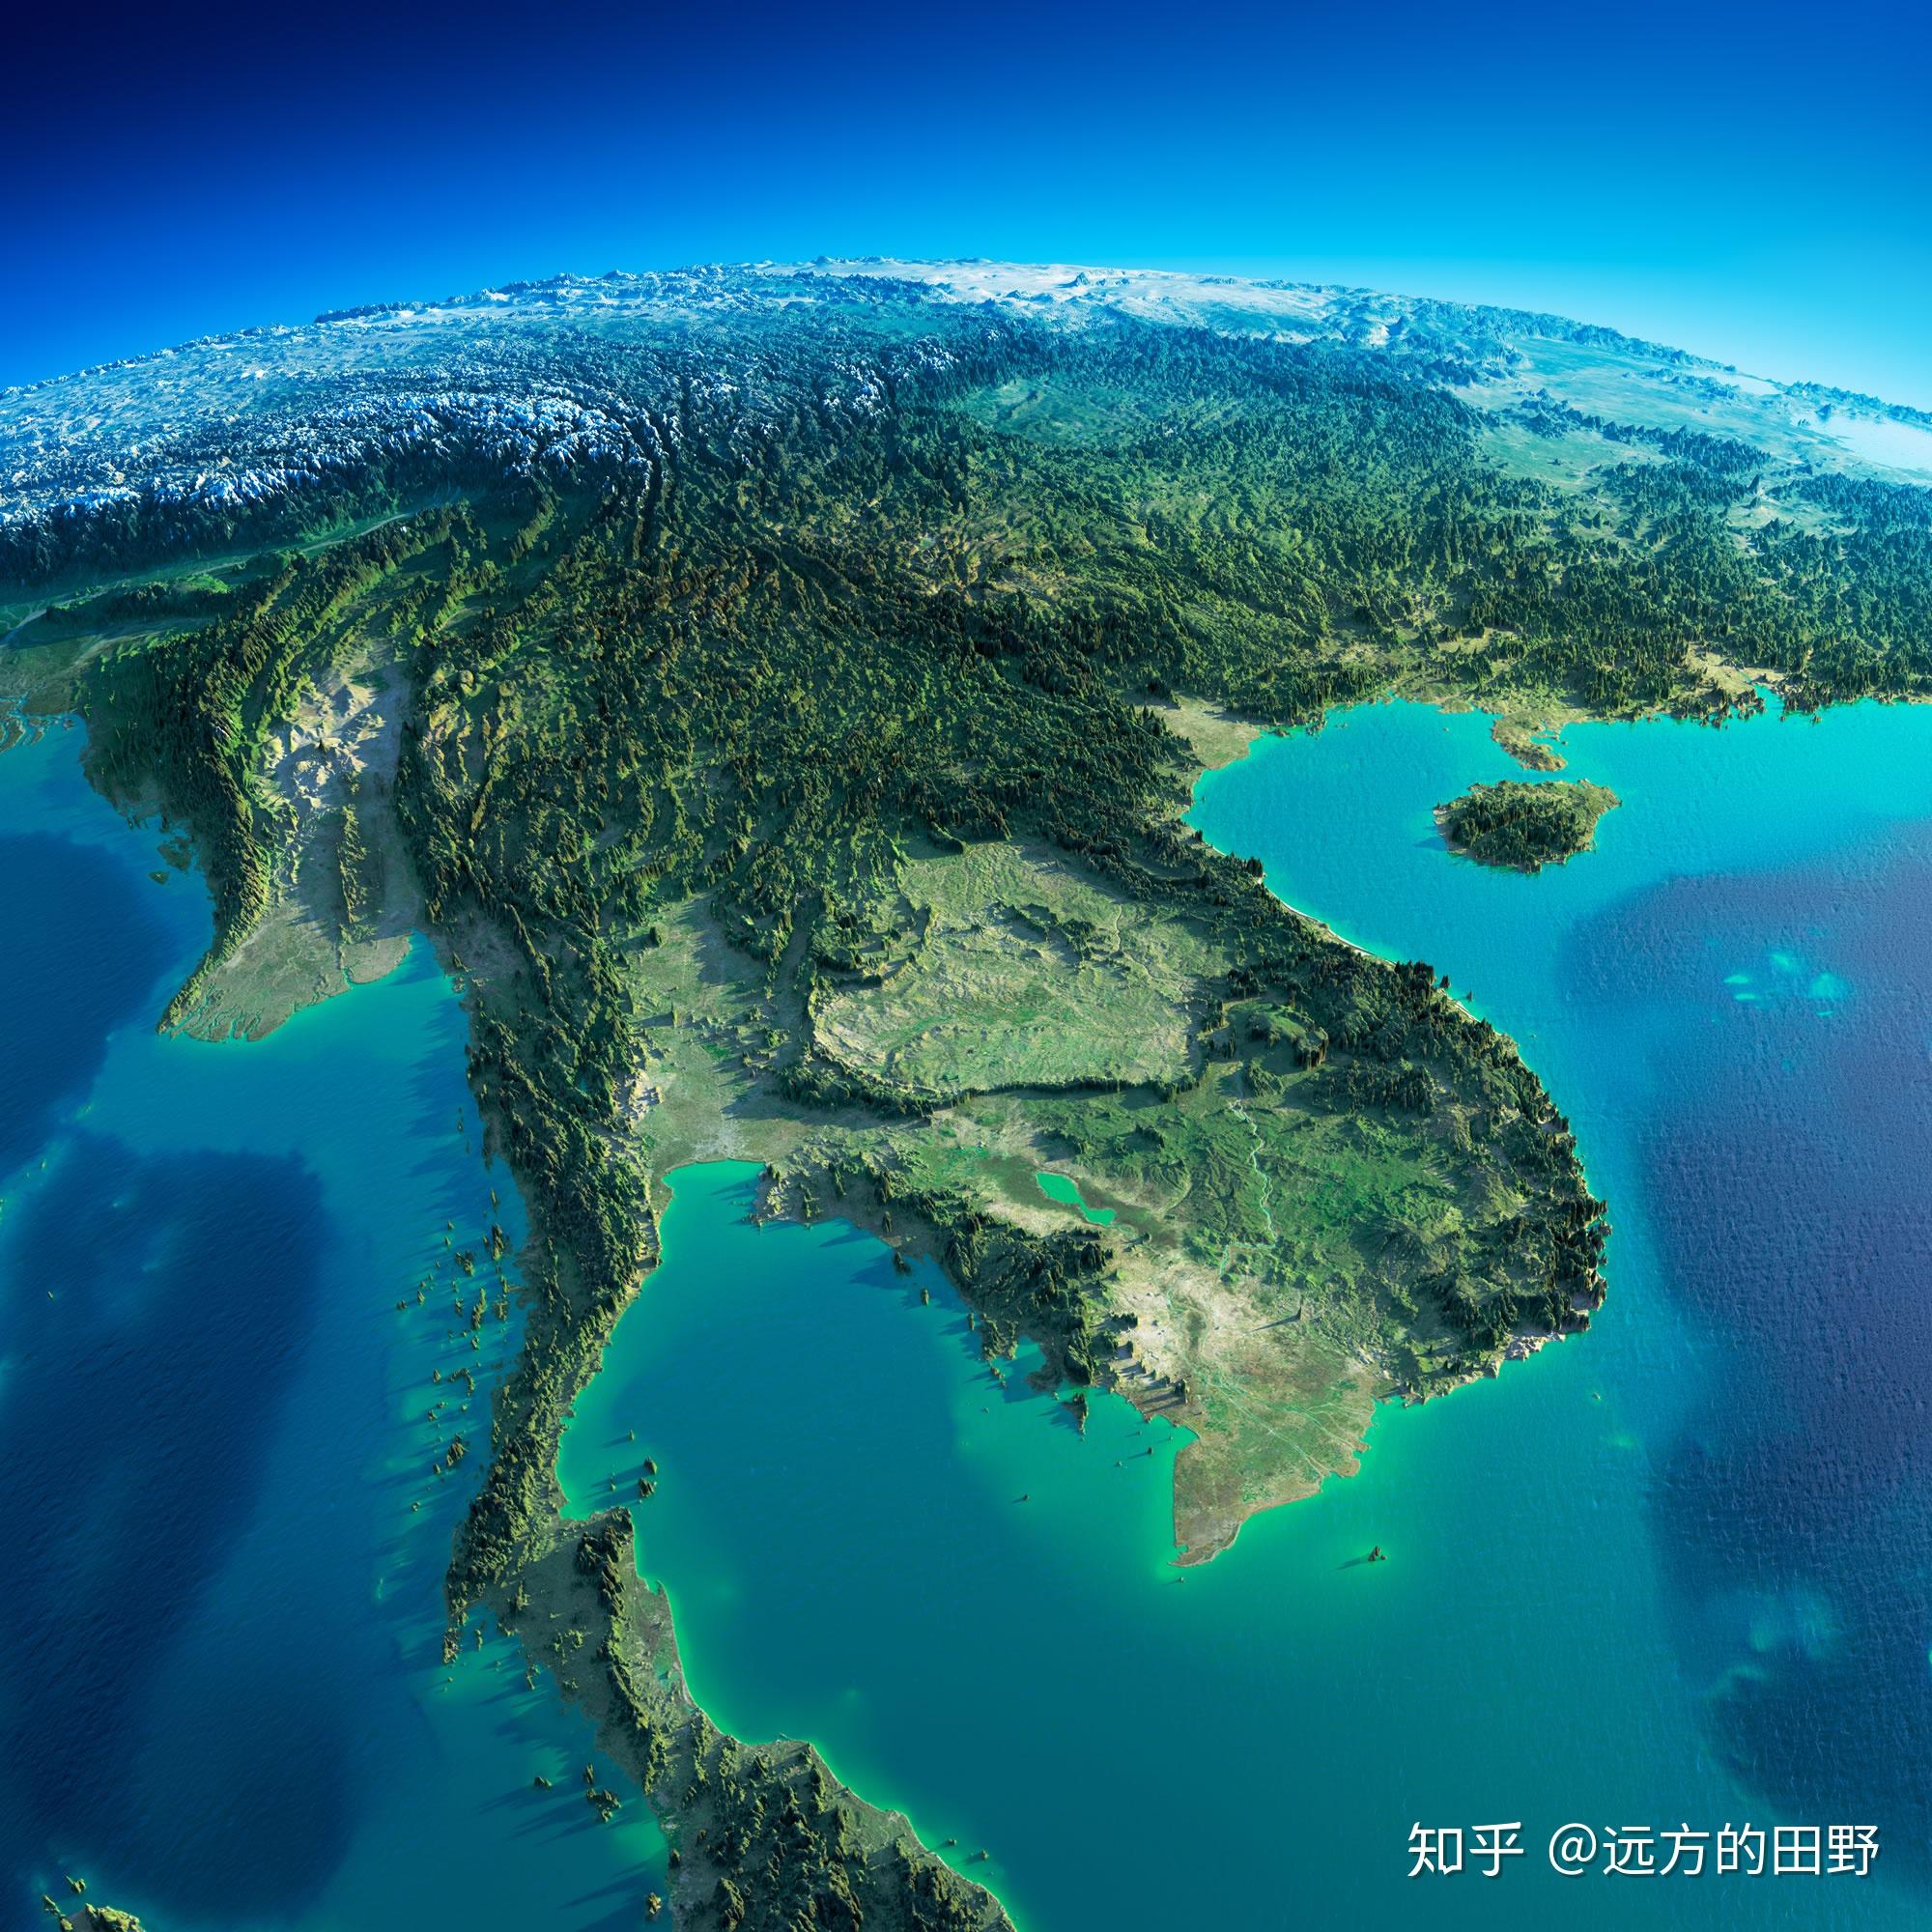 亚洲地形图高清 - 世界地理地图 - 地理教师网